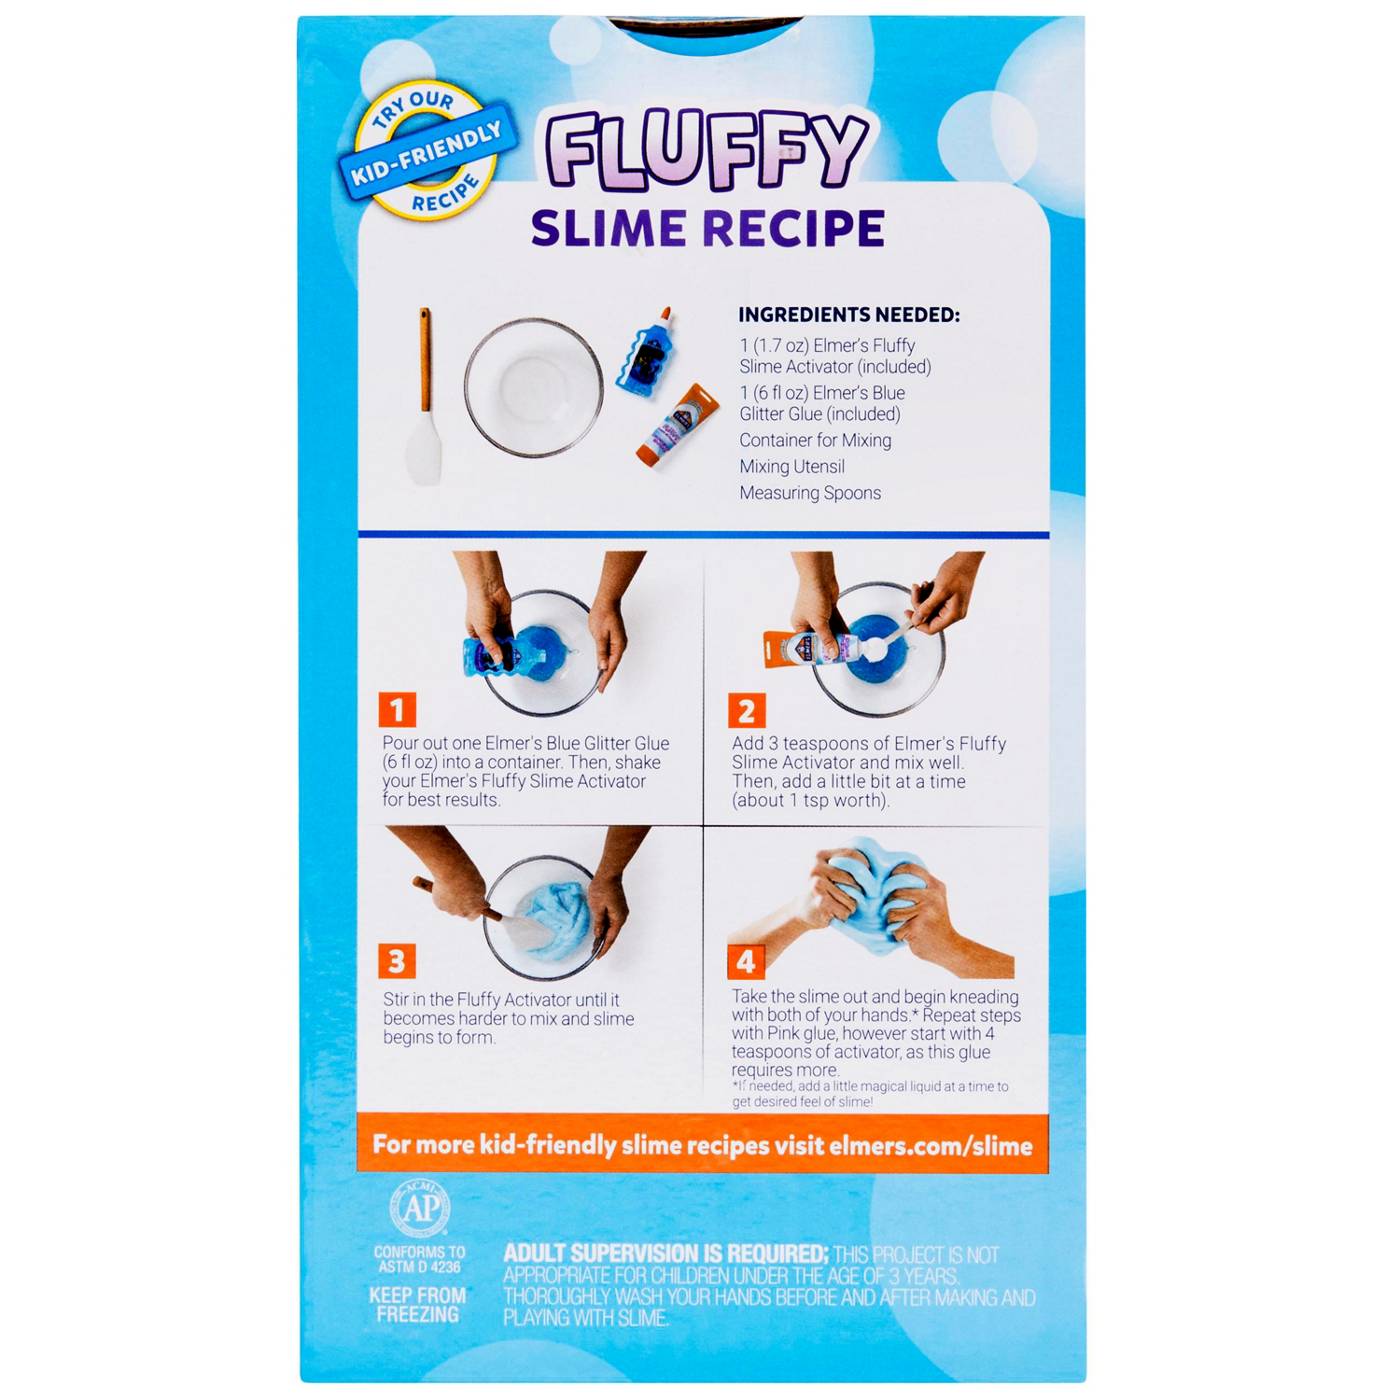 Elmer's Glassy Glue - Clear